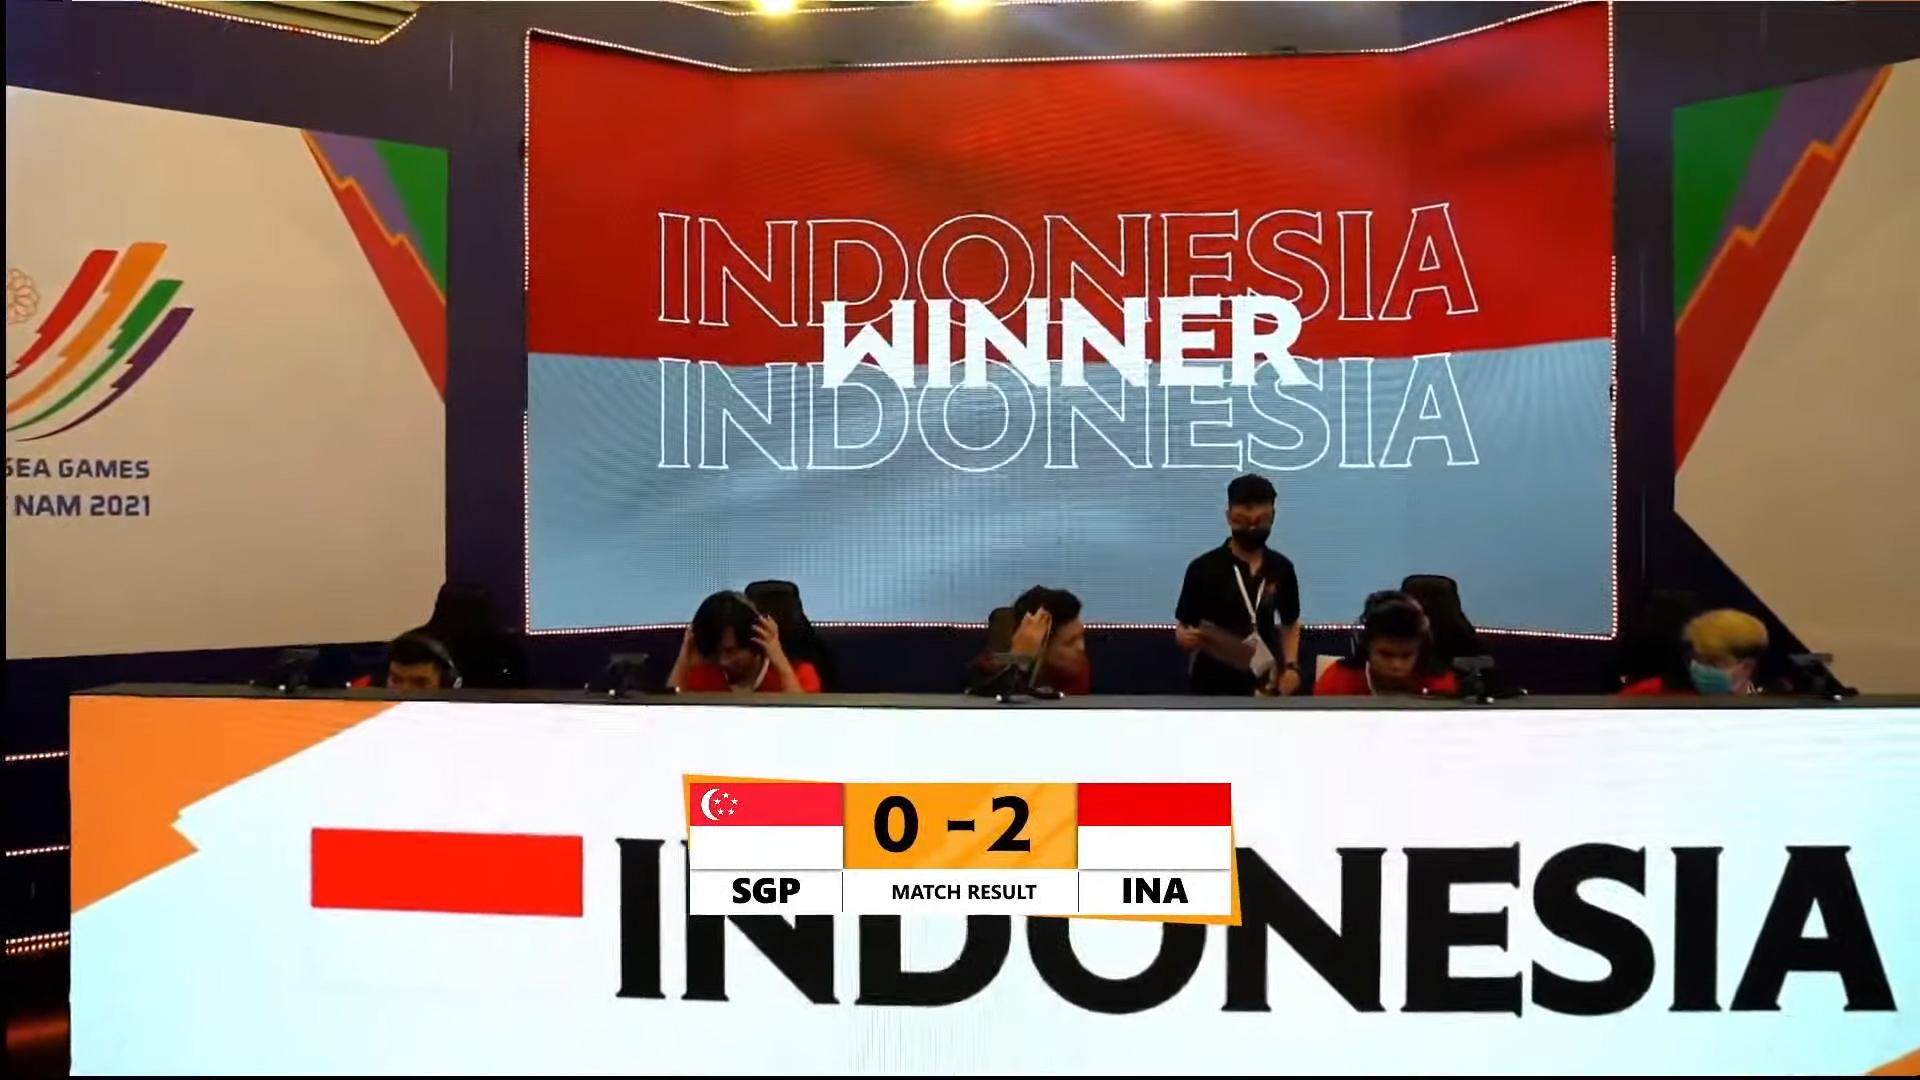 [Trực tiếp] Mobile Legends: Bang Bang ngày 18/5: Indonesia đánh bại Singapore với kết quả 2-0, tiến vào vòng sau với vị trí top 1 bảng B